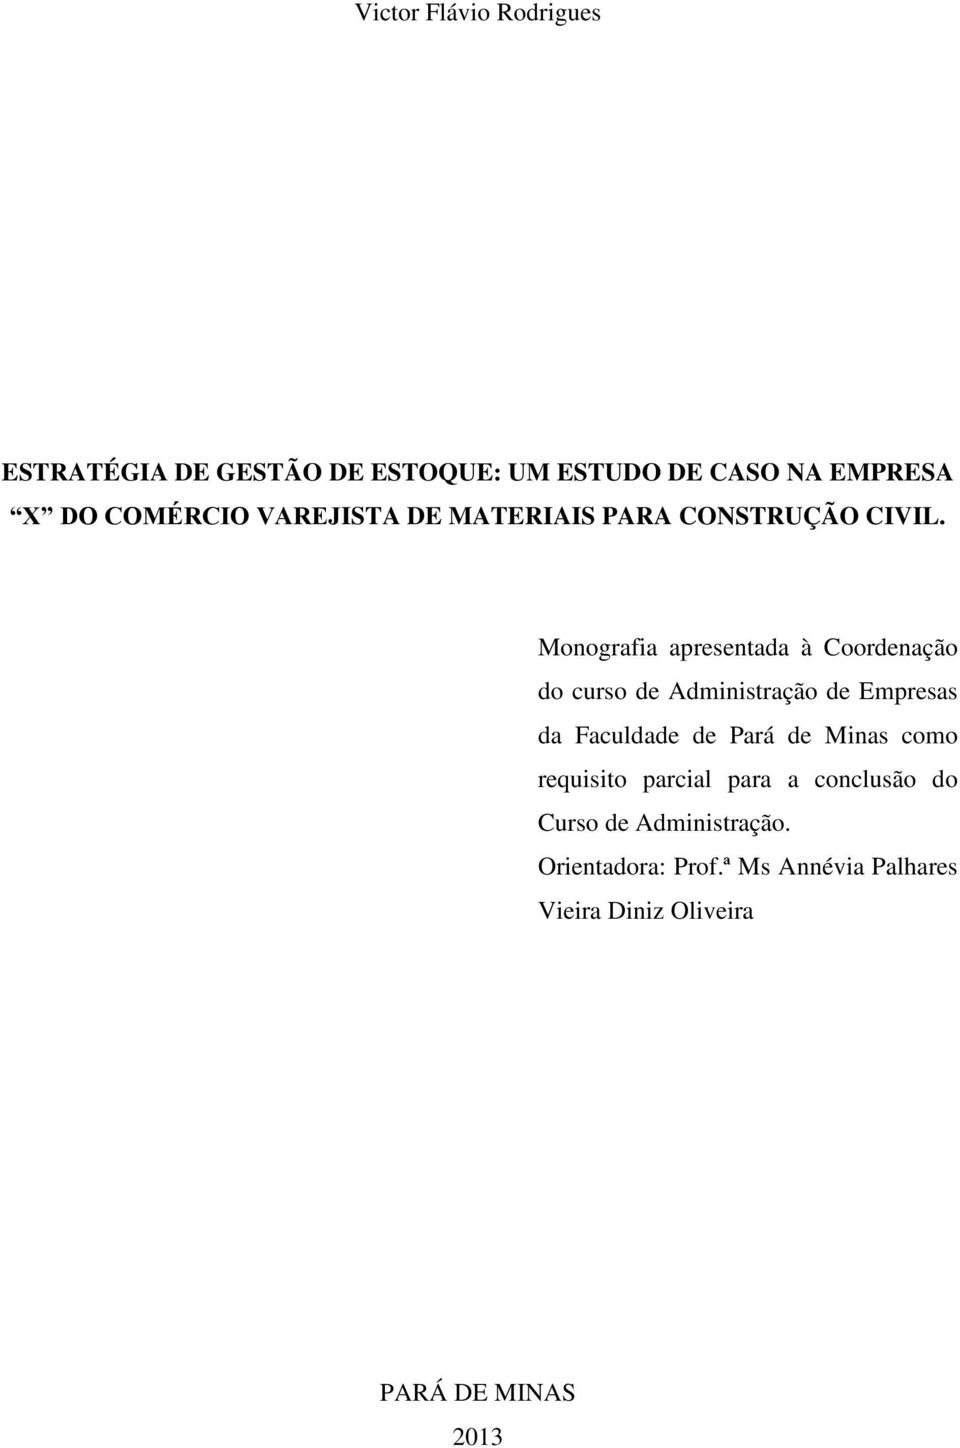 Monografia apresentada à Coordenação do curso de Administração de Empresas da Faculdade de Pará de